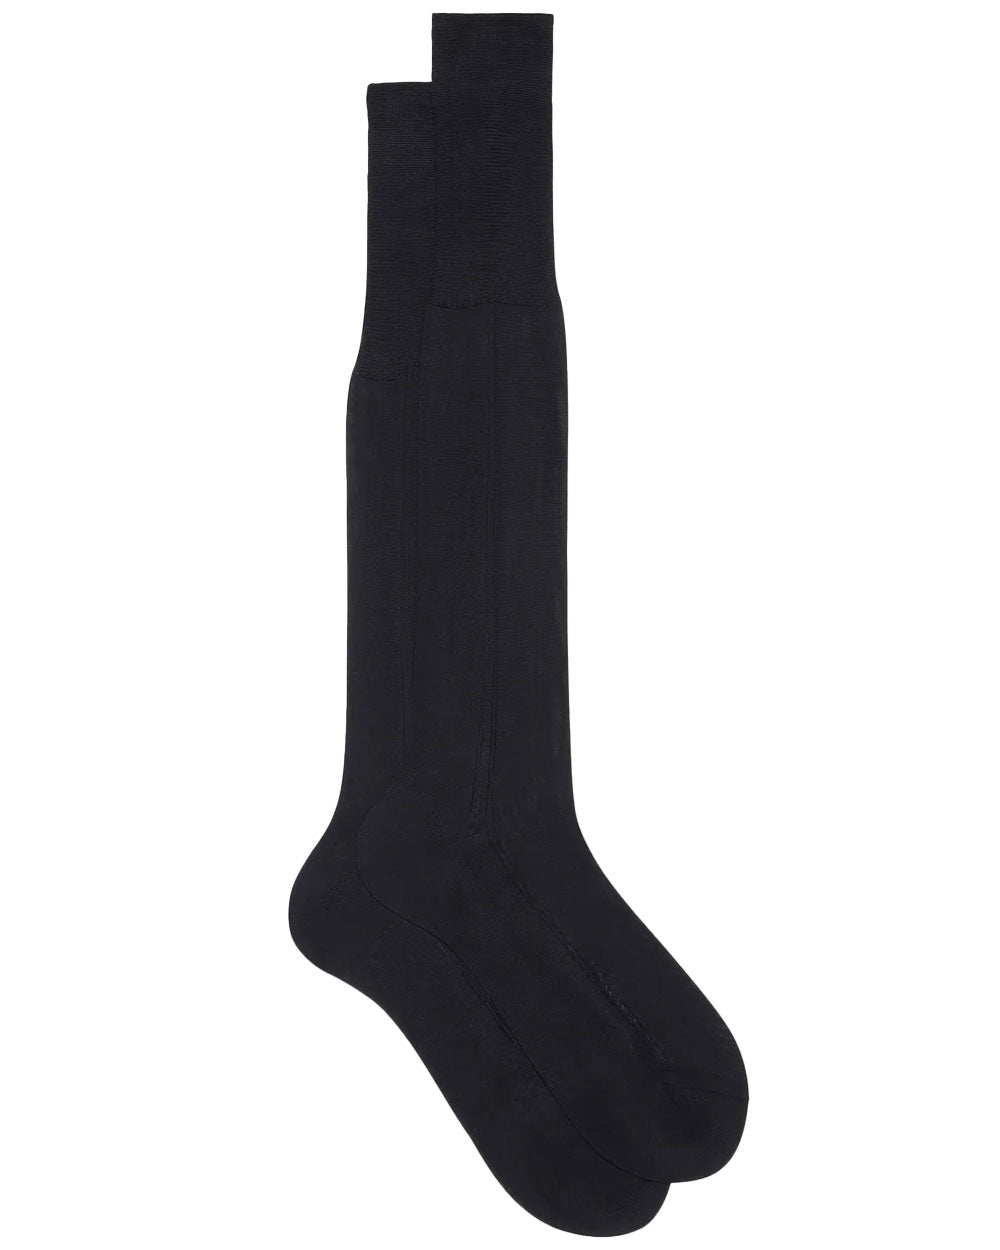 Silk Over the Calf Socks in Navy